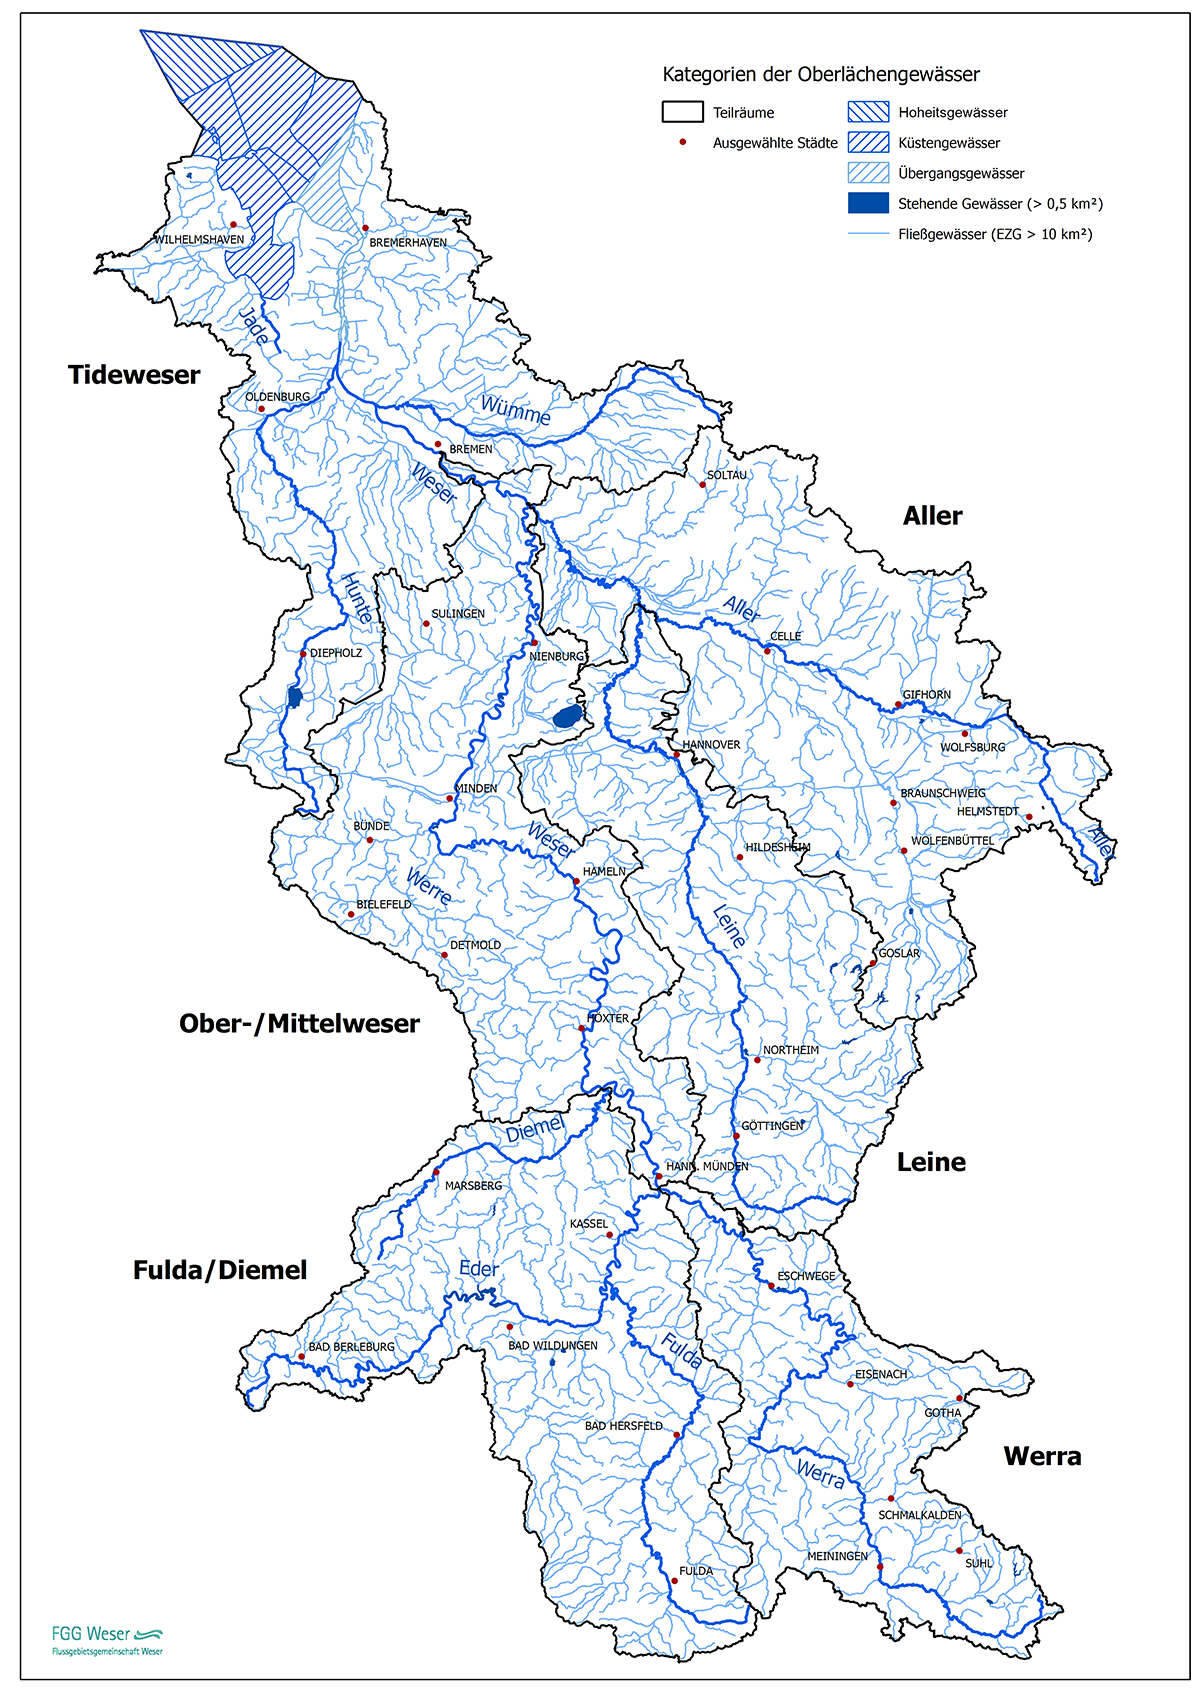 Kategorien der Oberflächengewässer (FGG Weser, 2021)